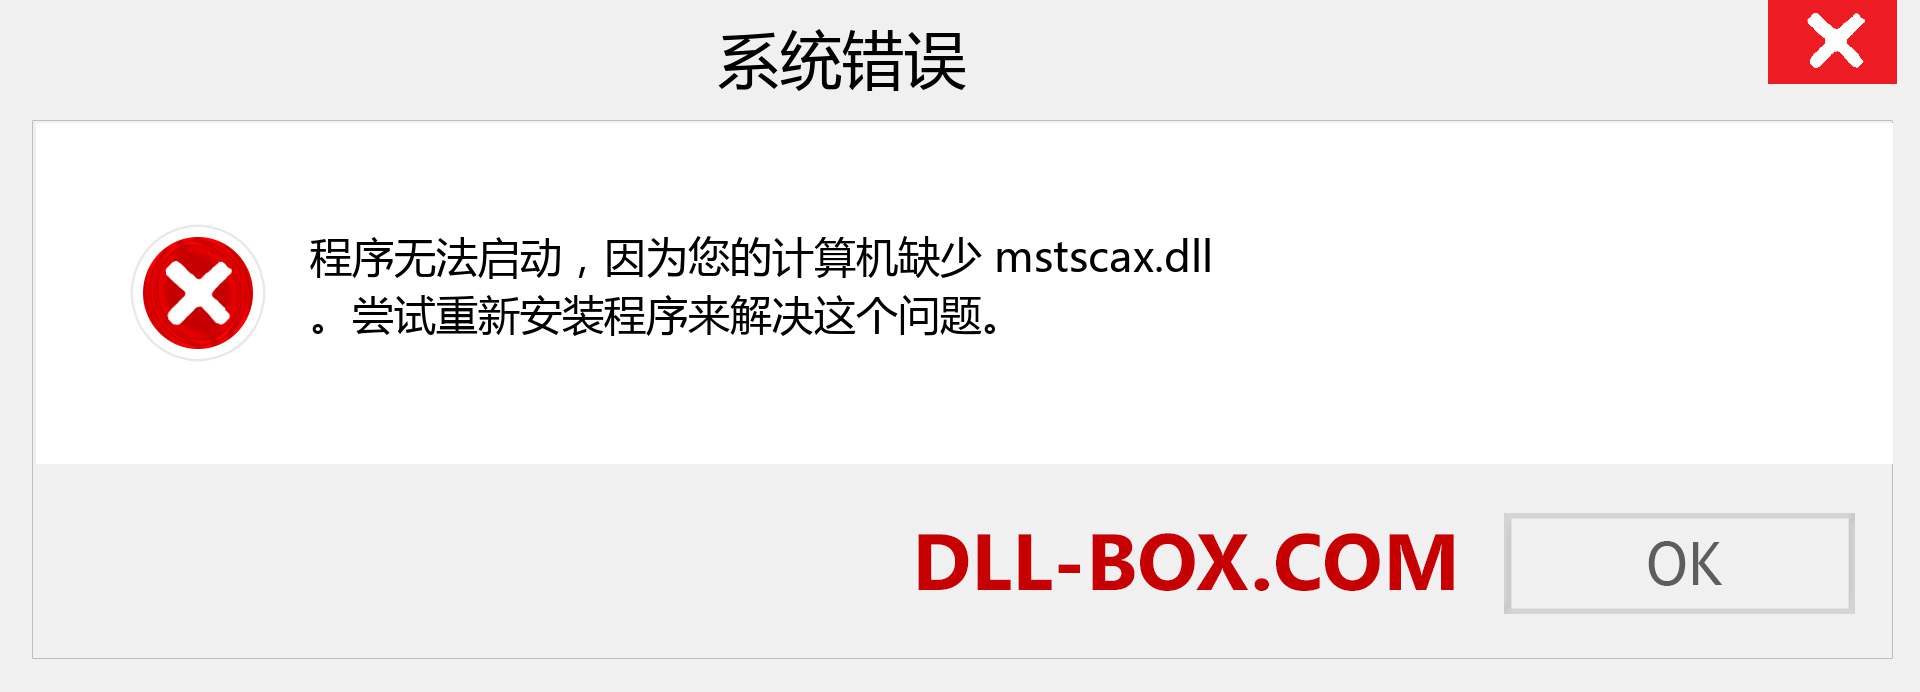 mstscax.dll 文件丢失？。 适用于 Windows 7、8、10 的下载 - 修复 Windows、照片、图像上的 mstscax dll 丢失错误